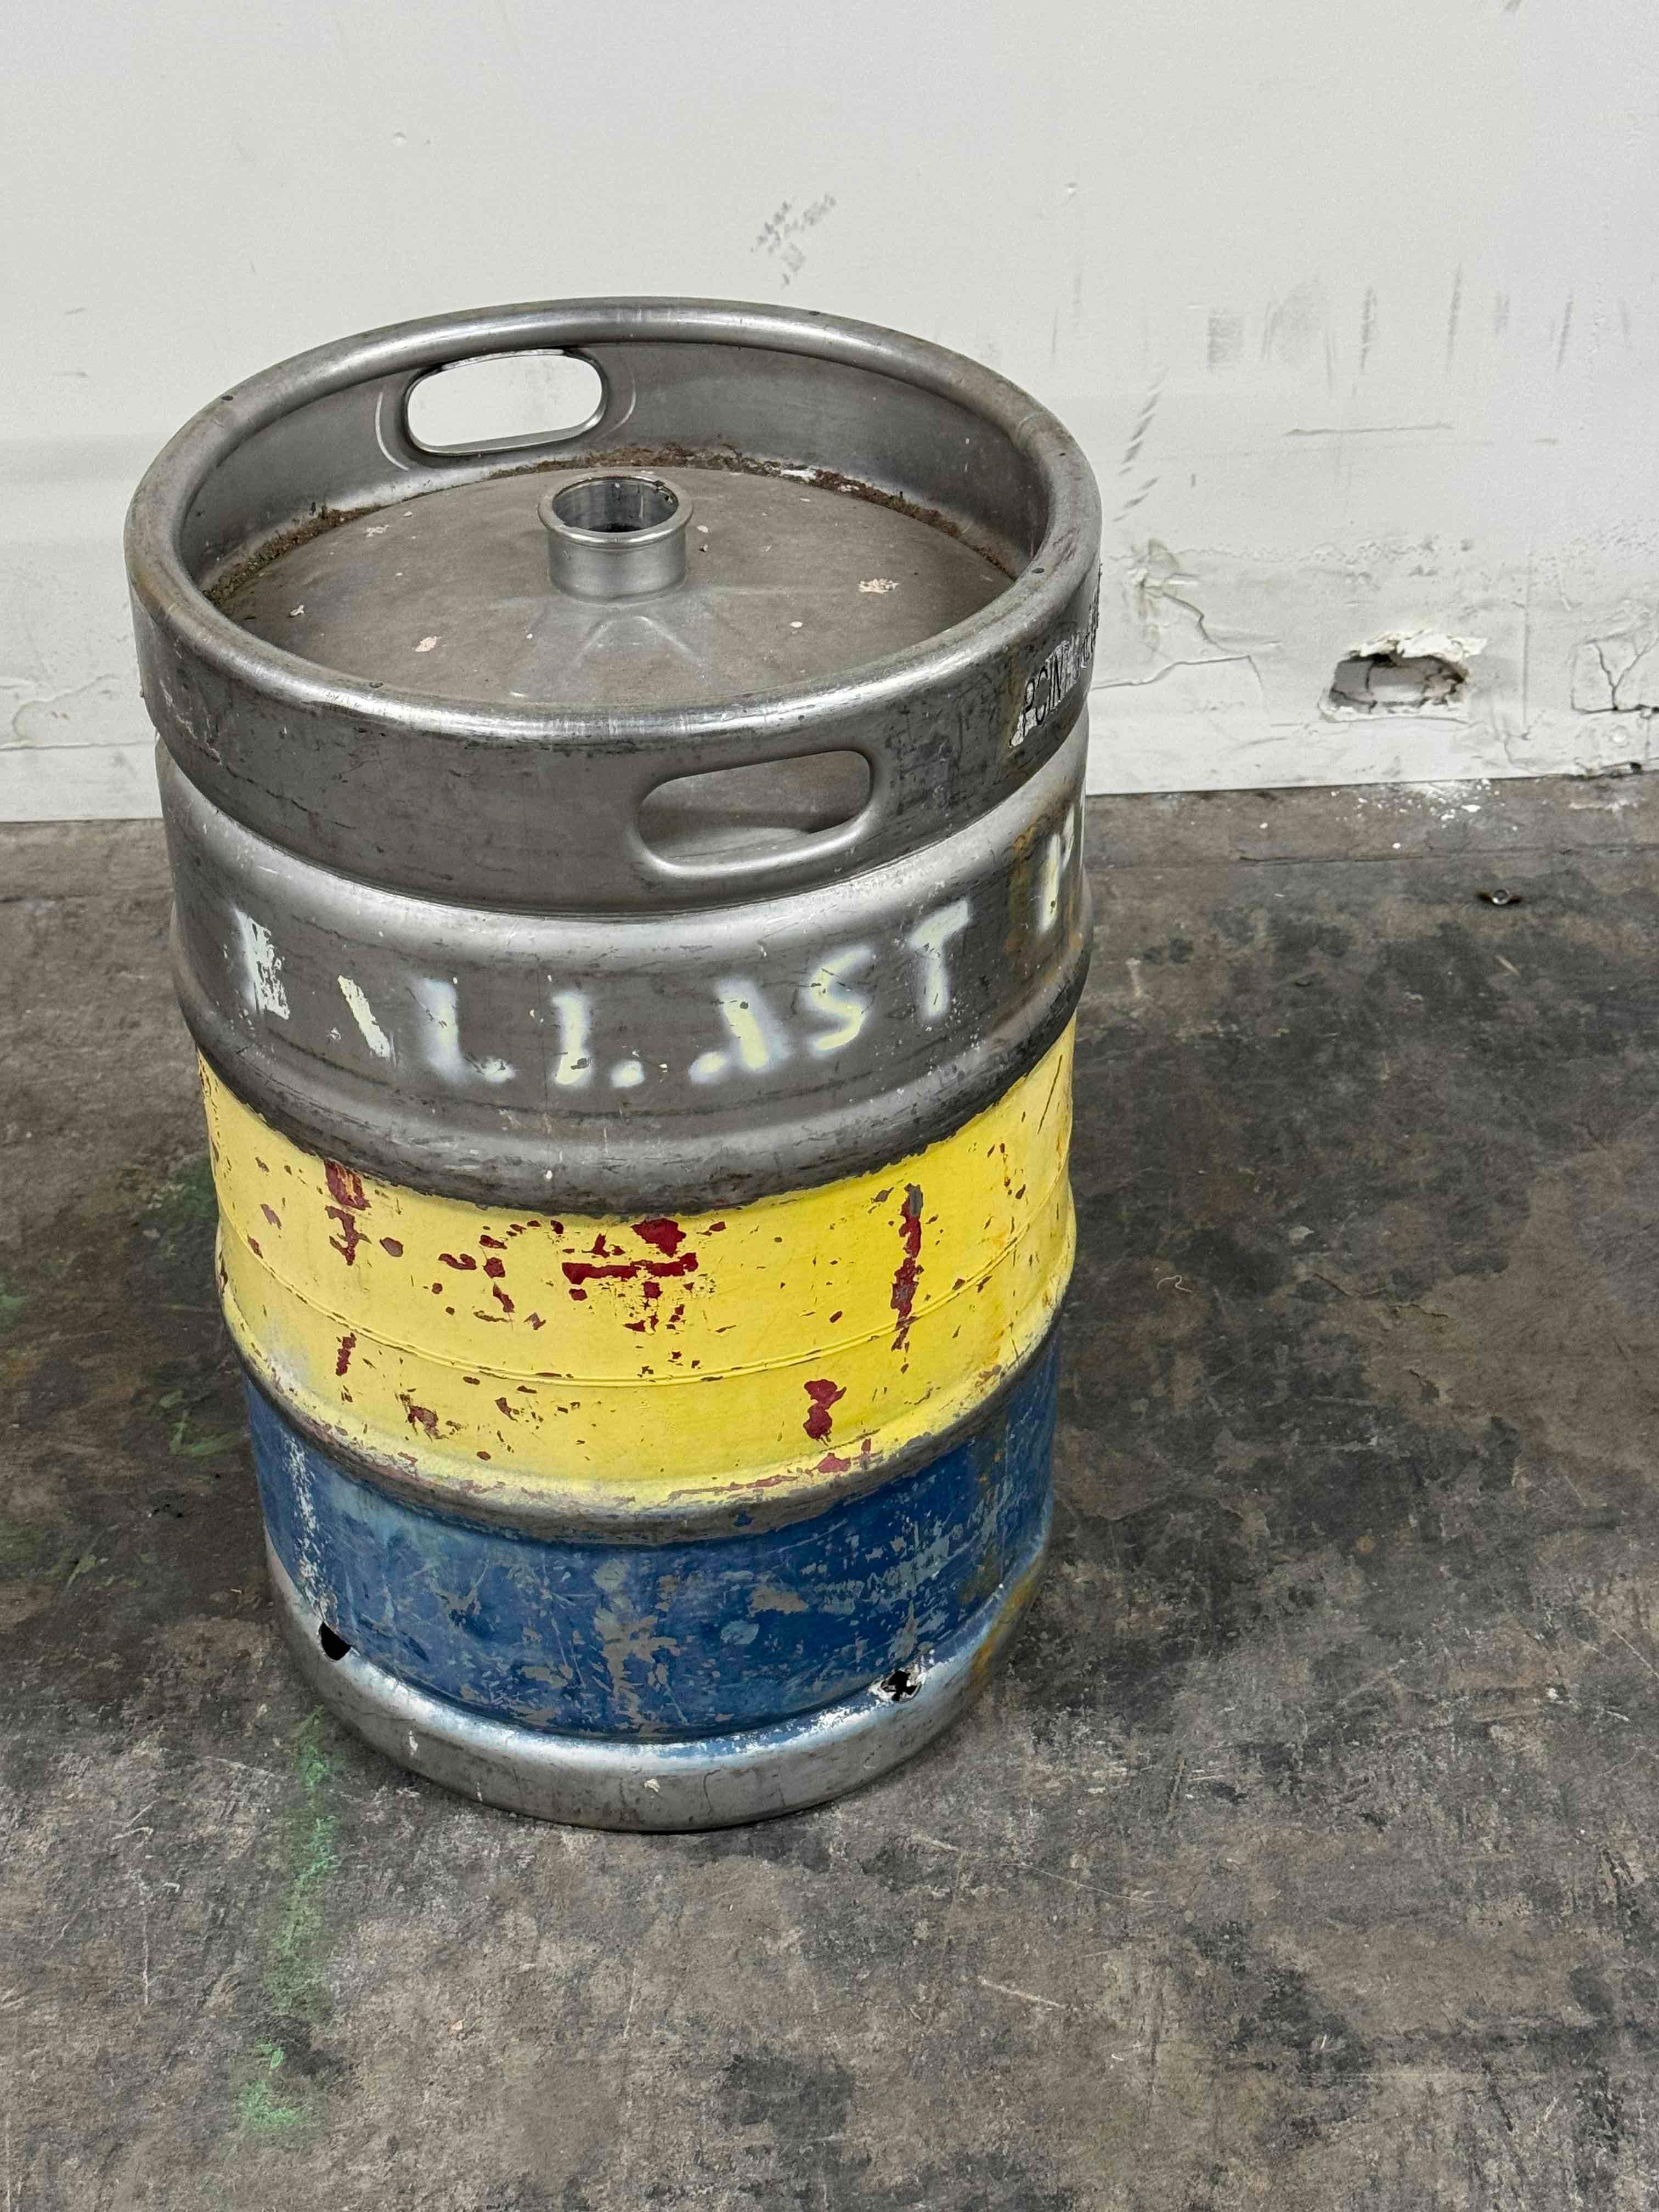 Pair Ballast Point Brewing Beer Kegs